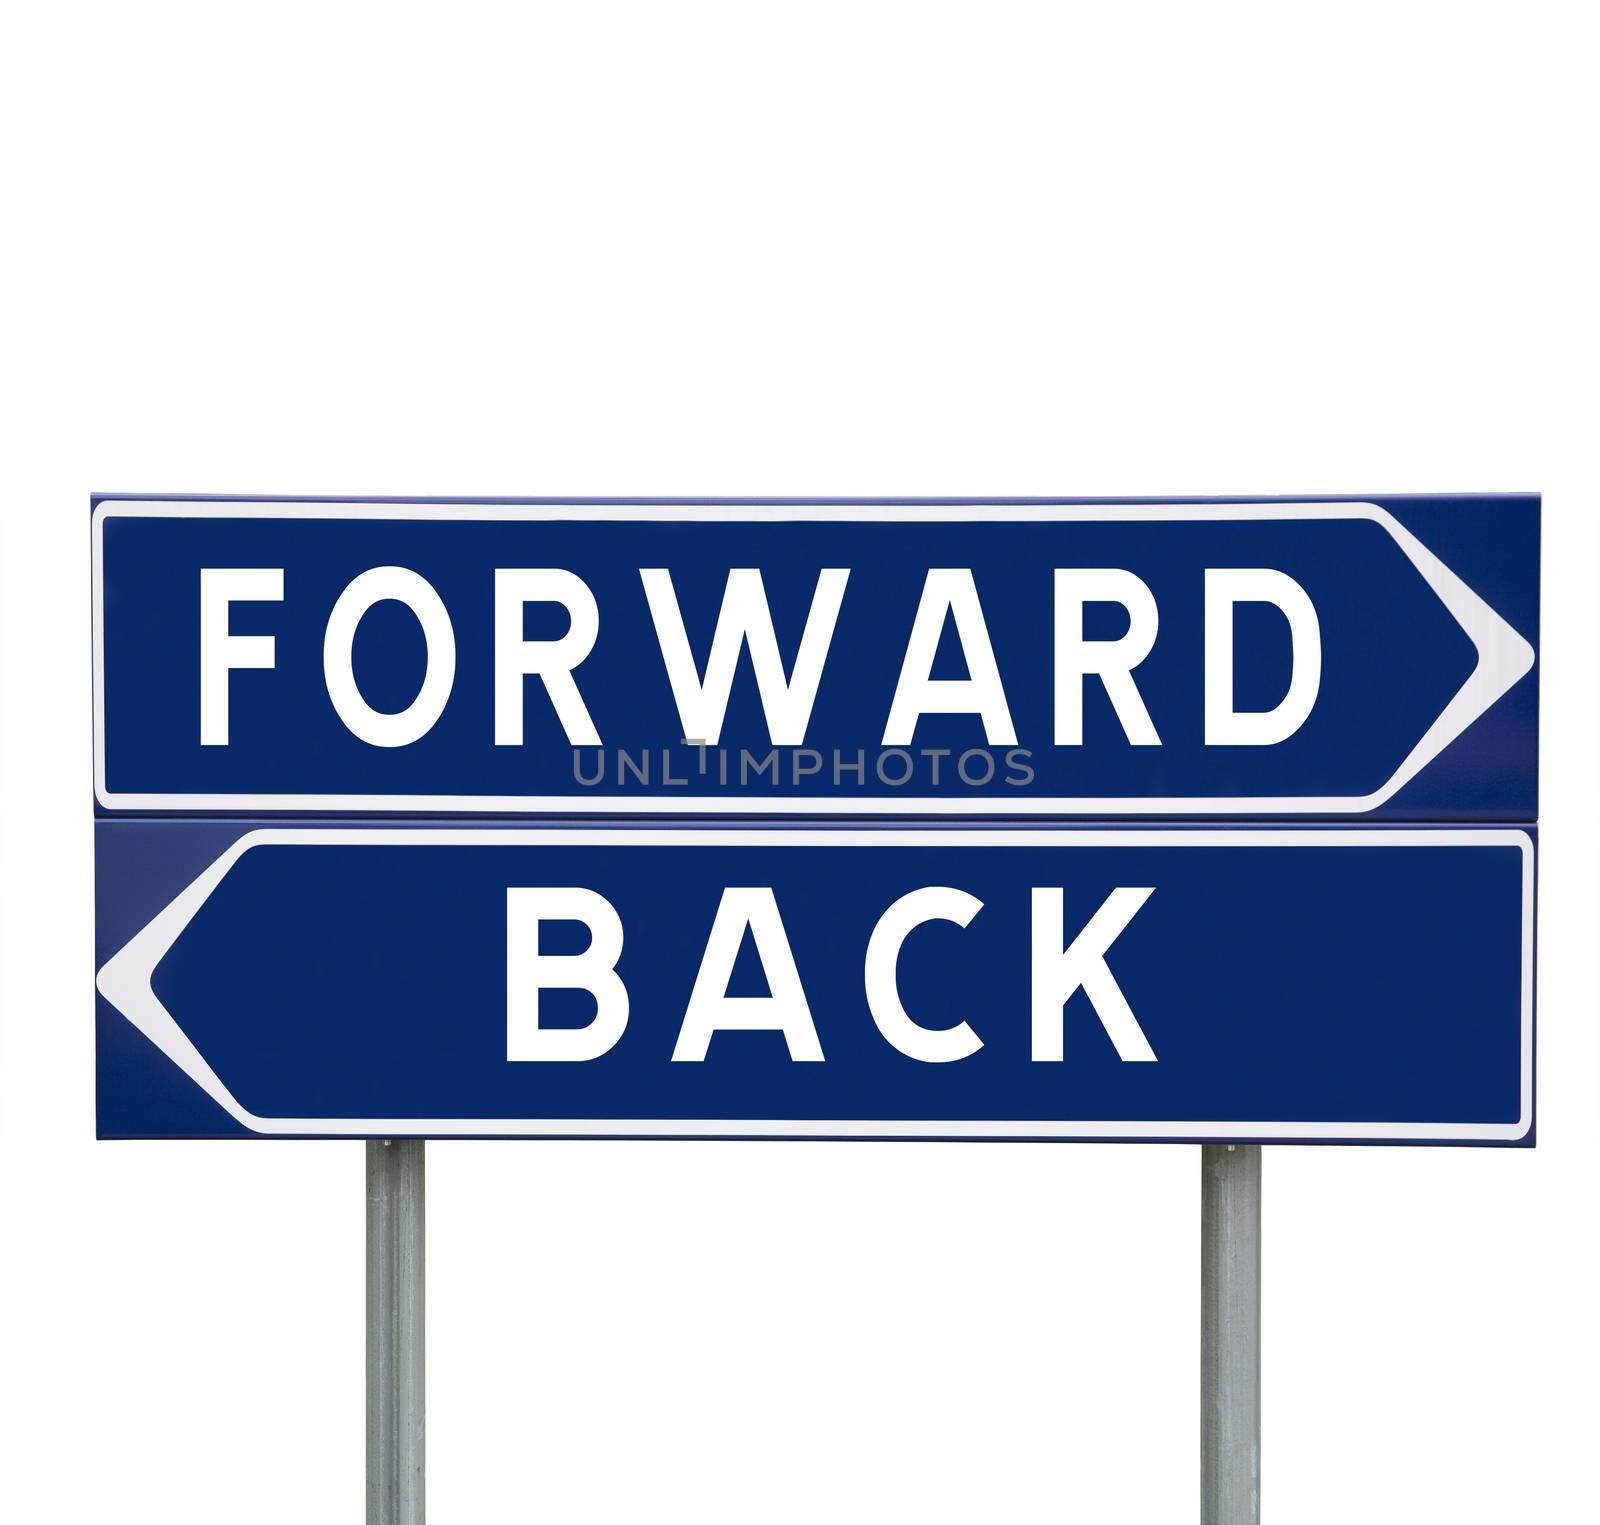 Forward or Back by gemenacom